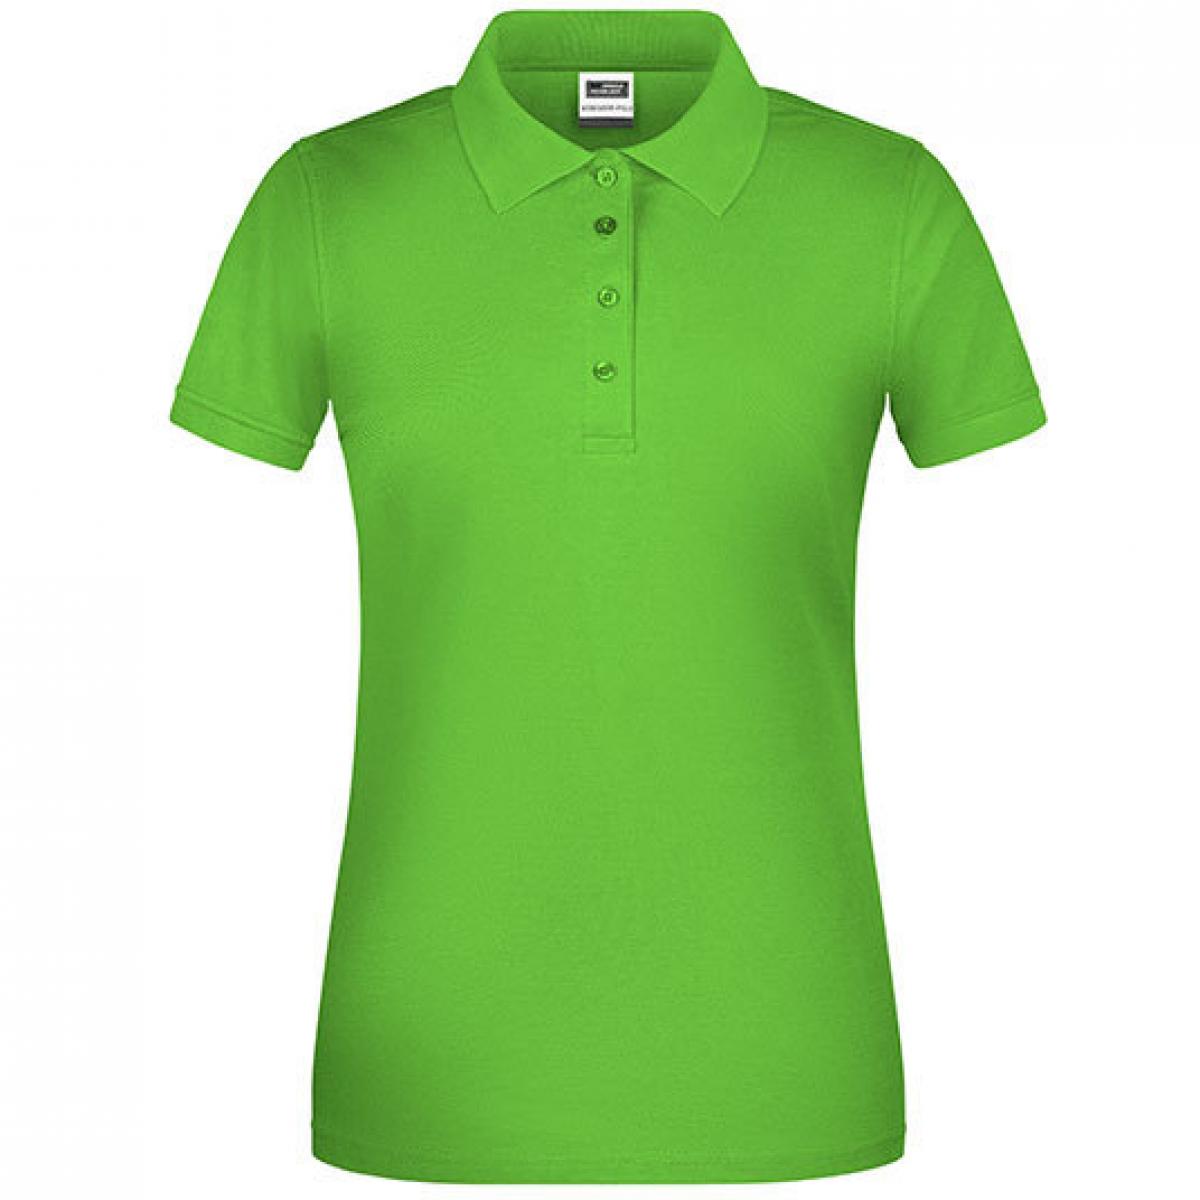 Hersteller: James+Nicholson Herstellernummer: JN873 Artikelbezeichnung: Damen Bio Workwear Polo, Waschbar bis 60 °C Farbe: Lime Green